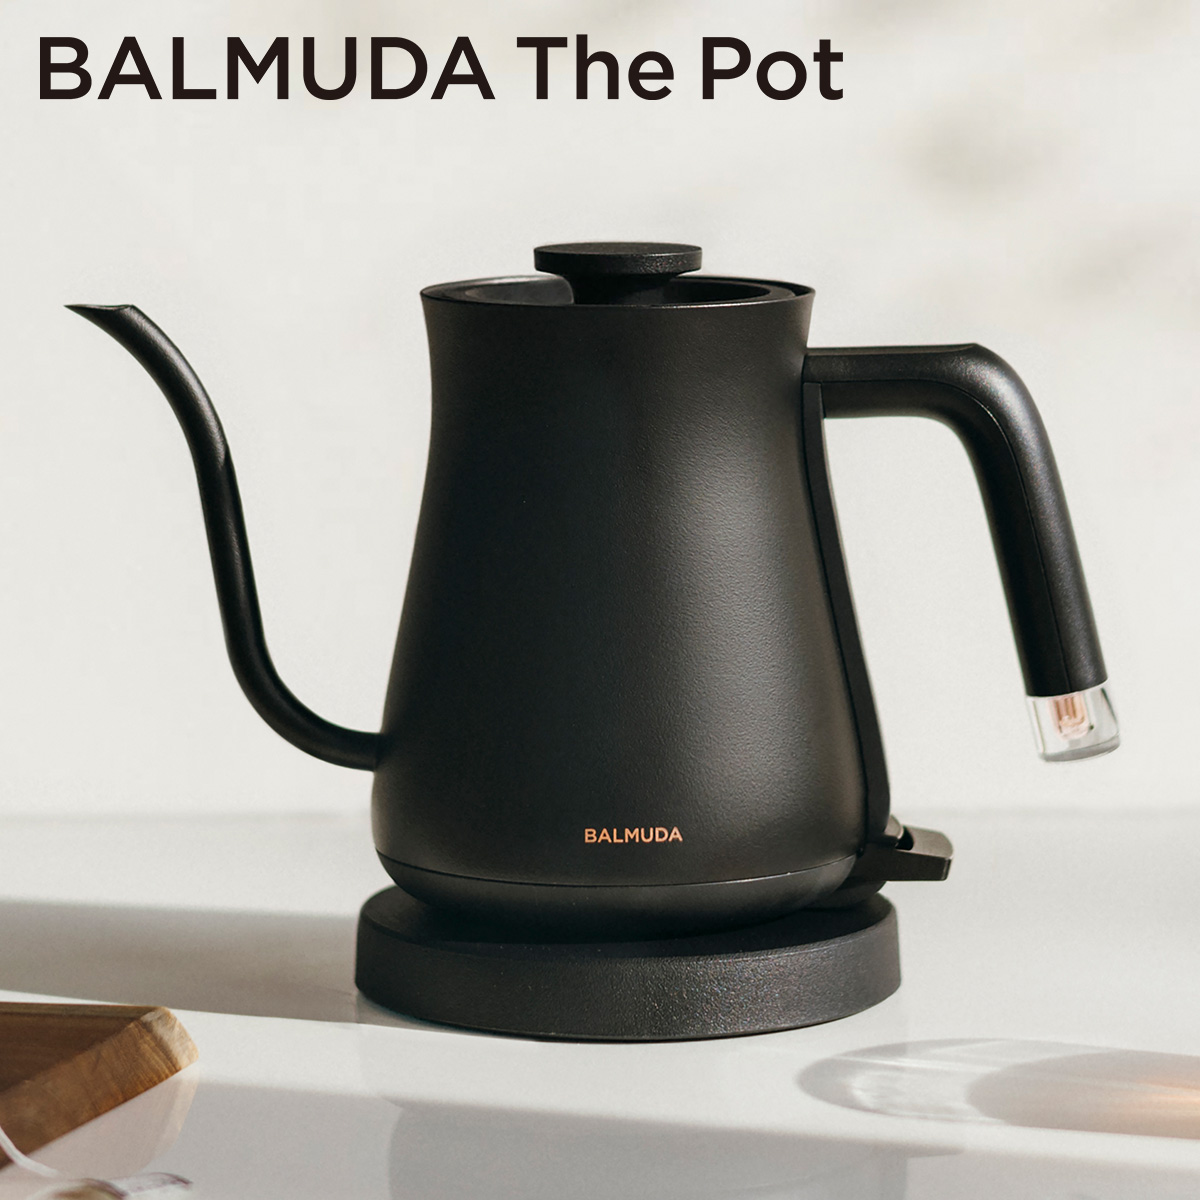 特価品コーナー☆ 新製品 BALMUDA 電気ケトル The Pot ブラック K07A